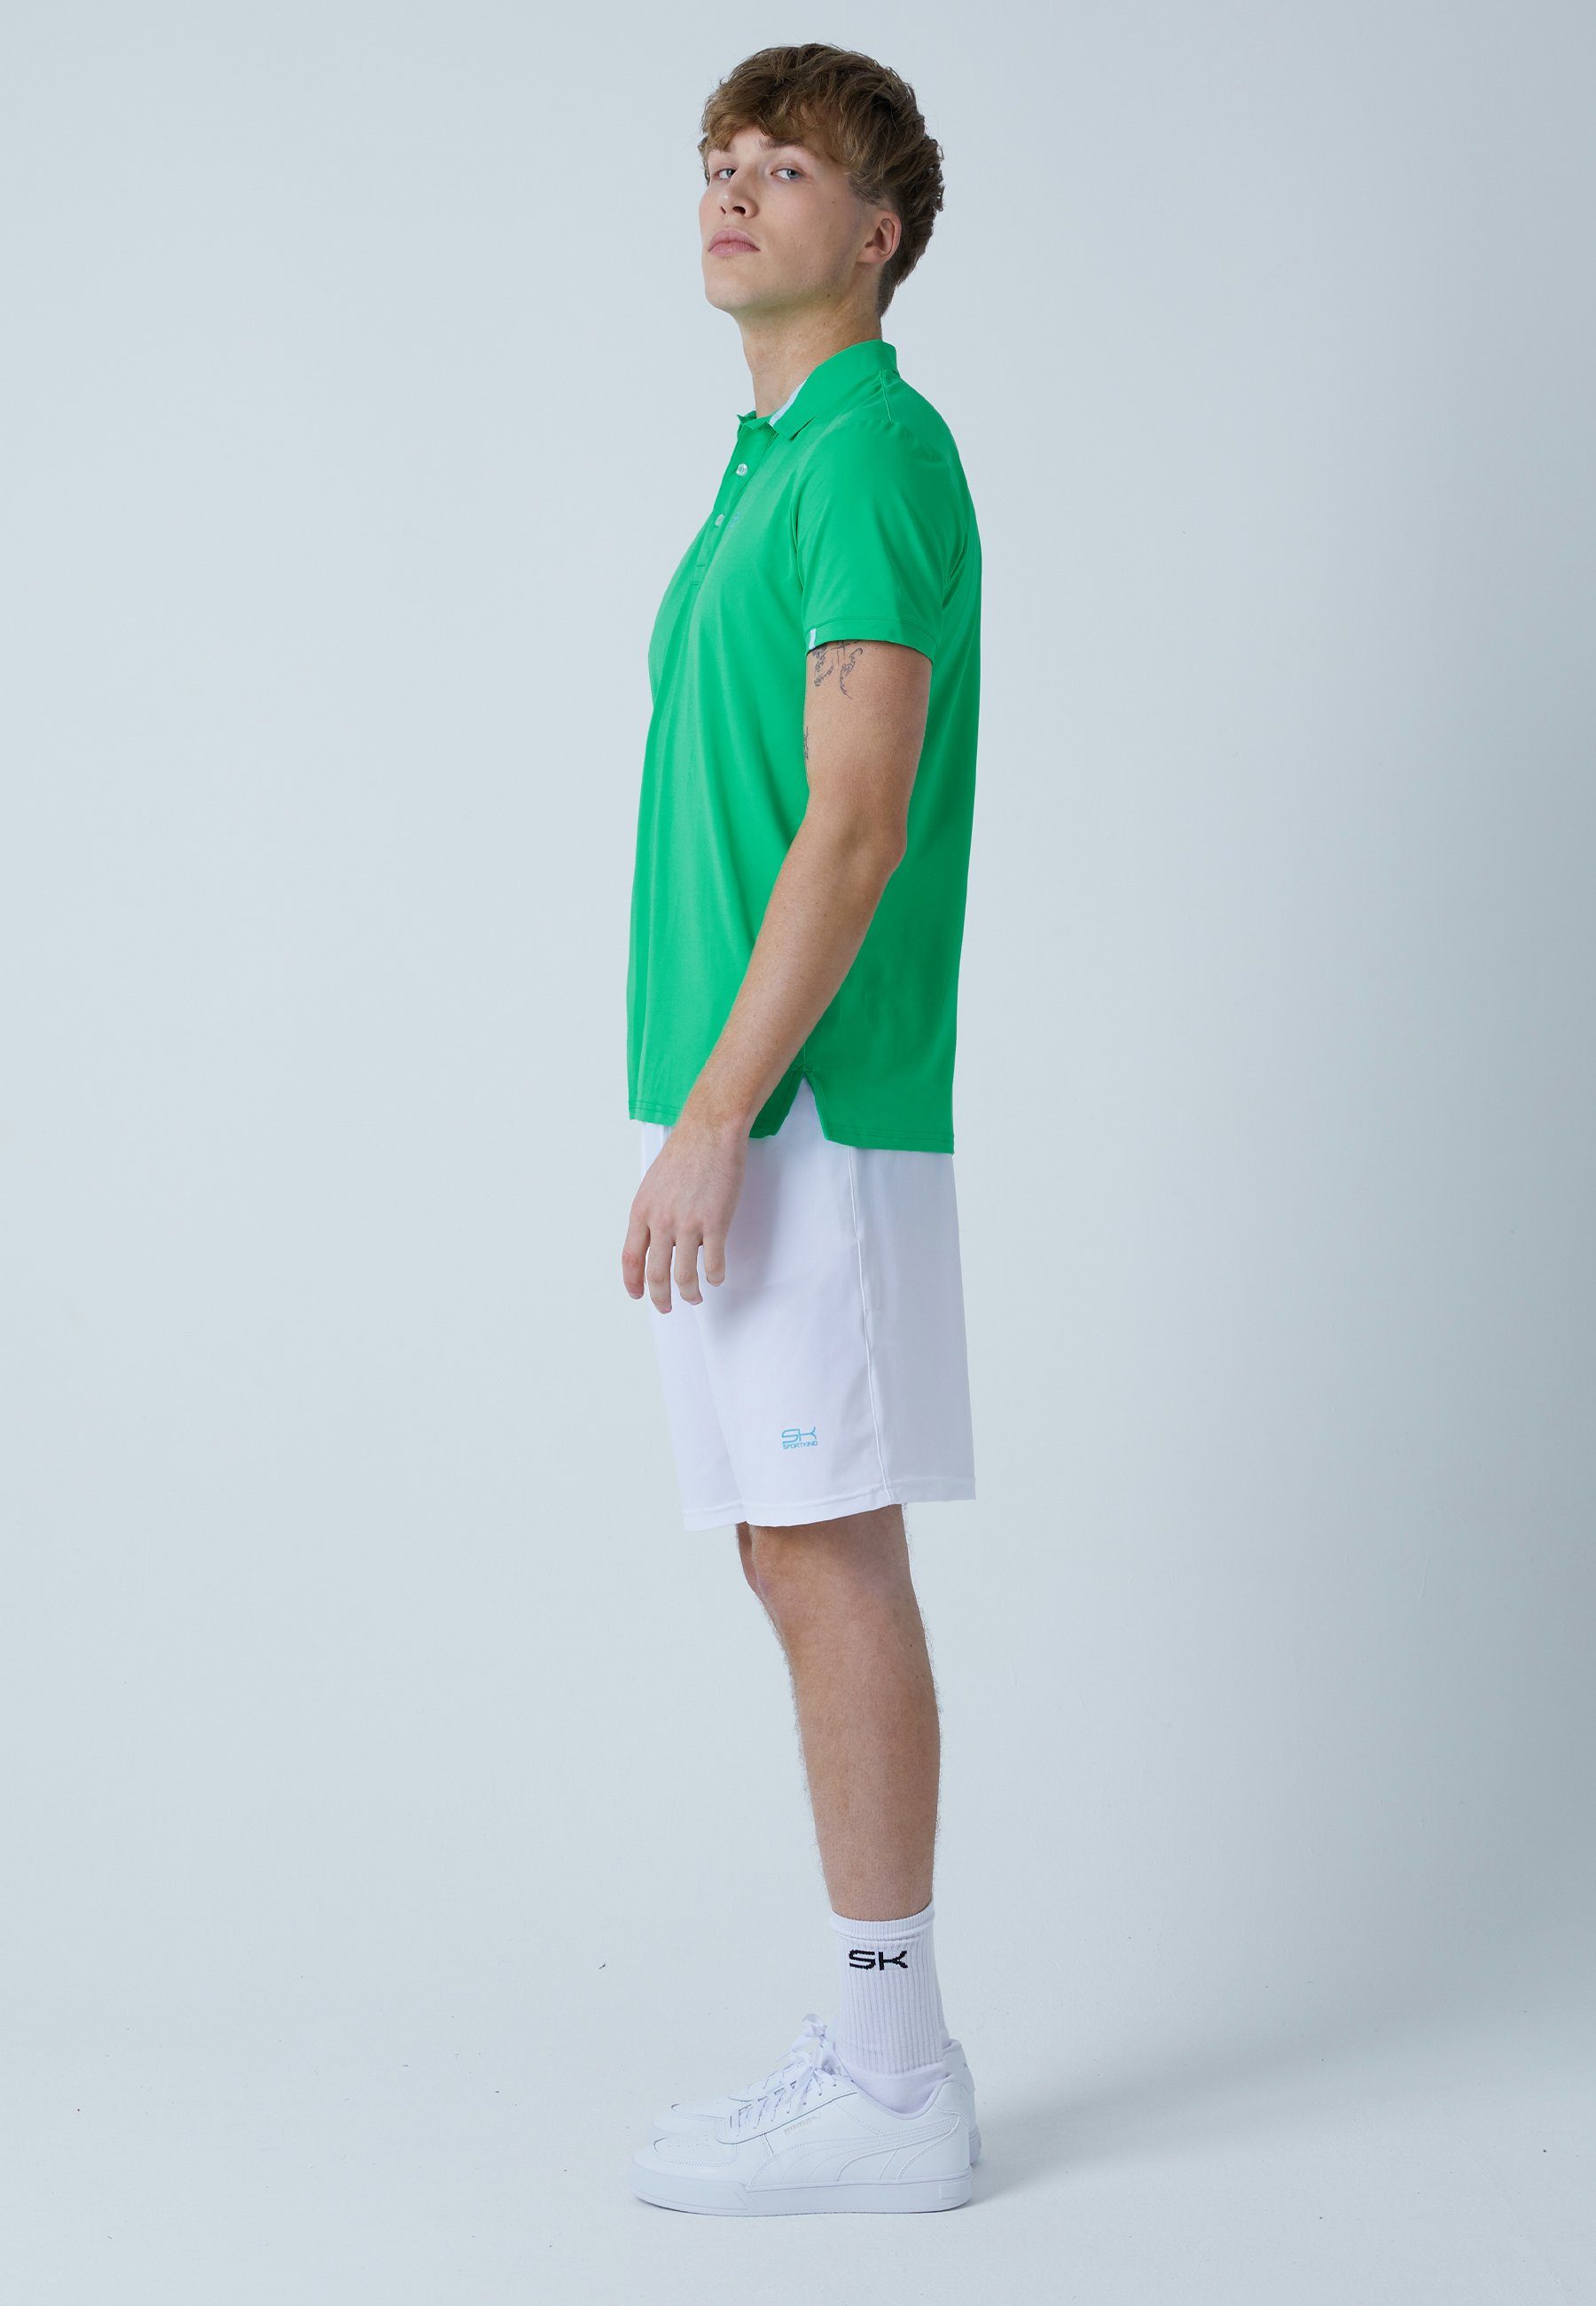 Jungen SPORTKIND Funktionsshirt Herren & Kurzarm grün Golf Polo Shirt